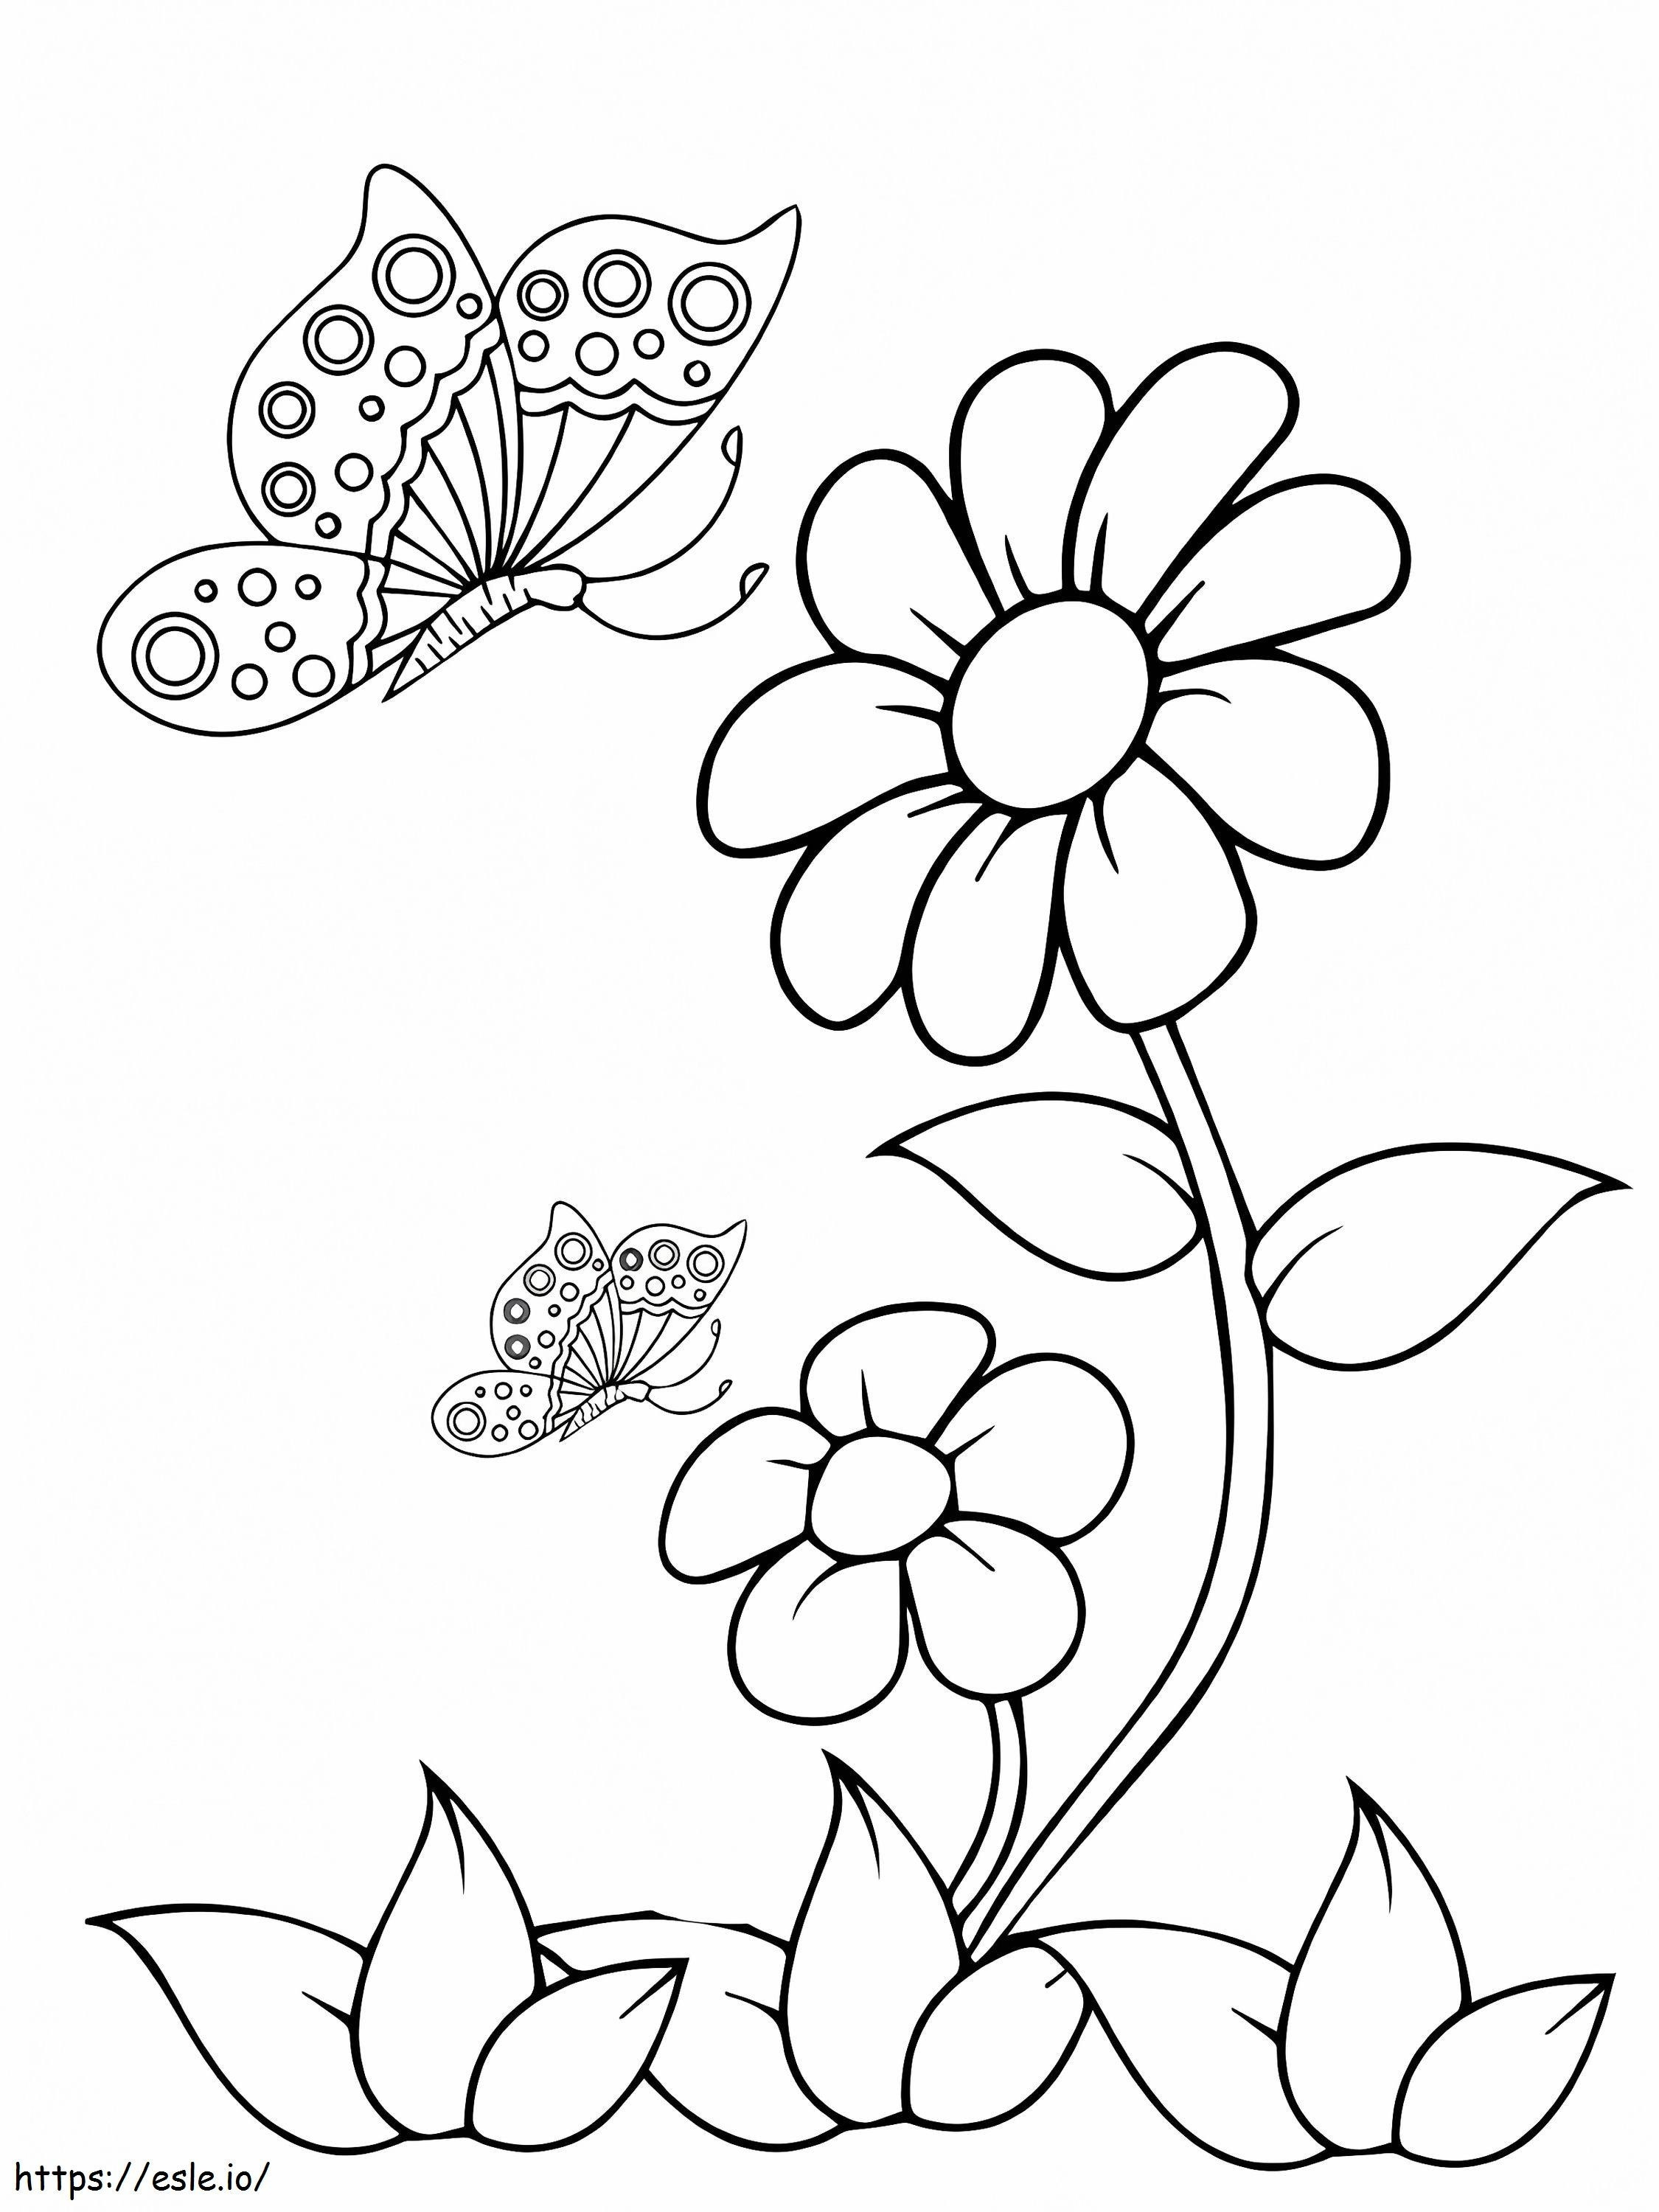 Zwei Schmetterlinge und Blumen ausmalbilder